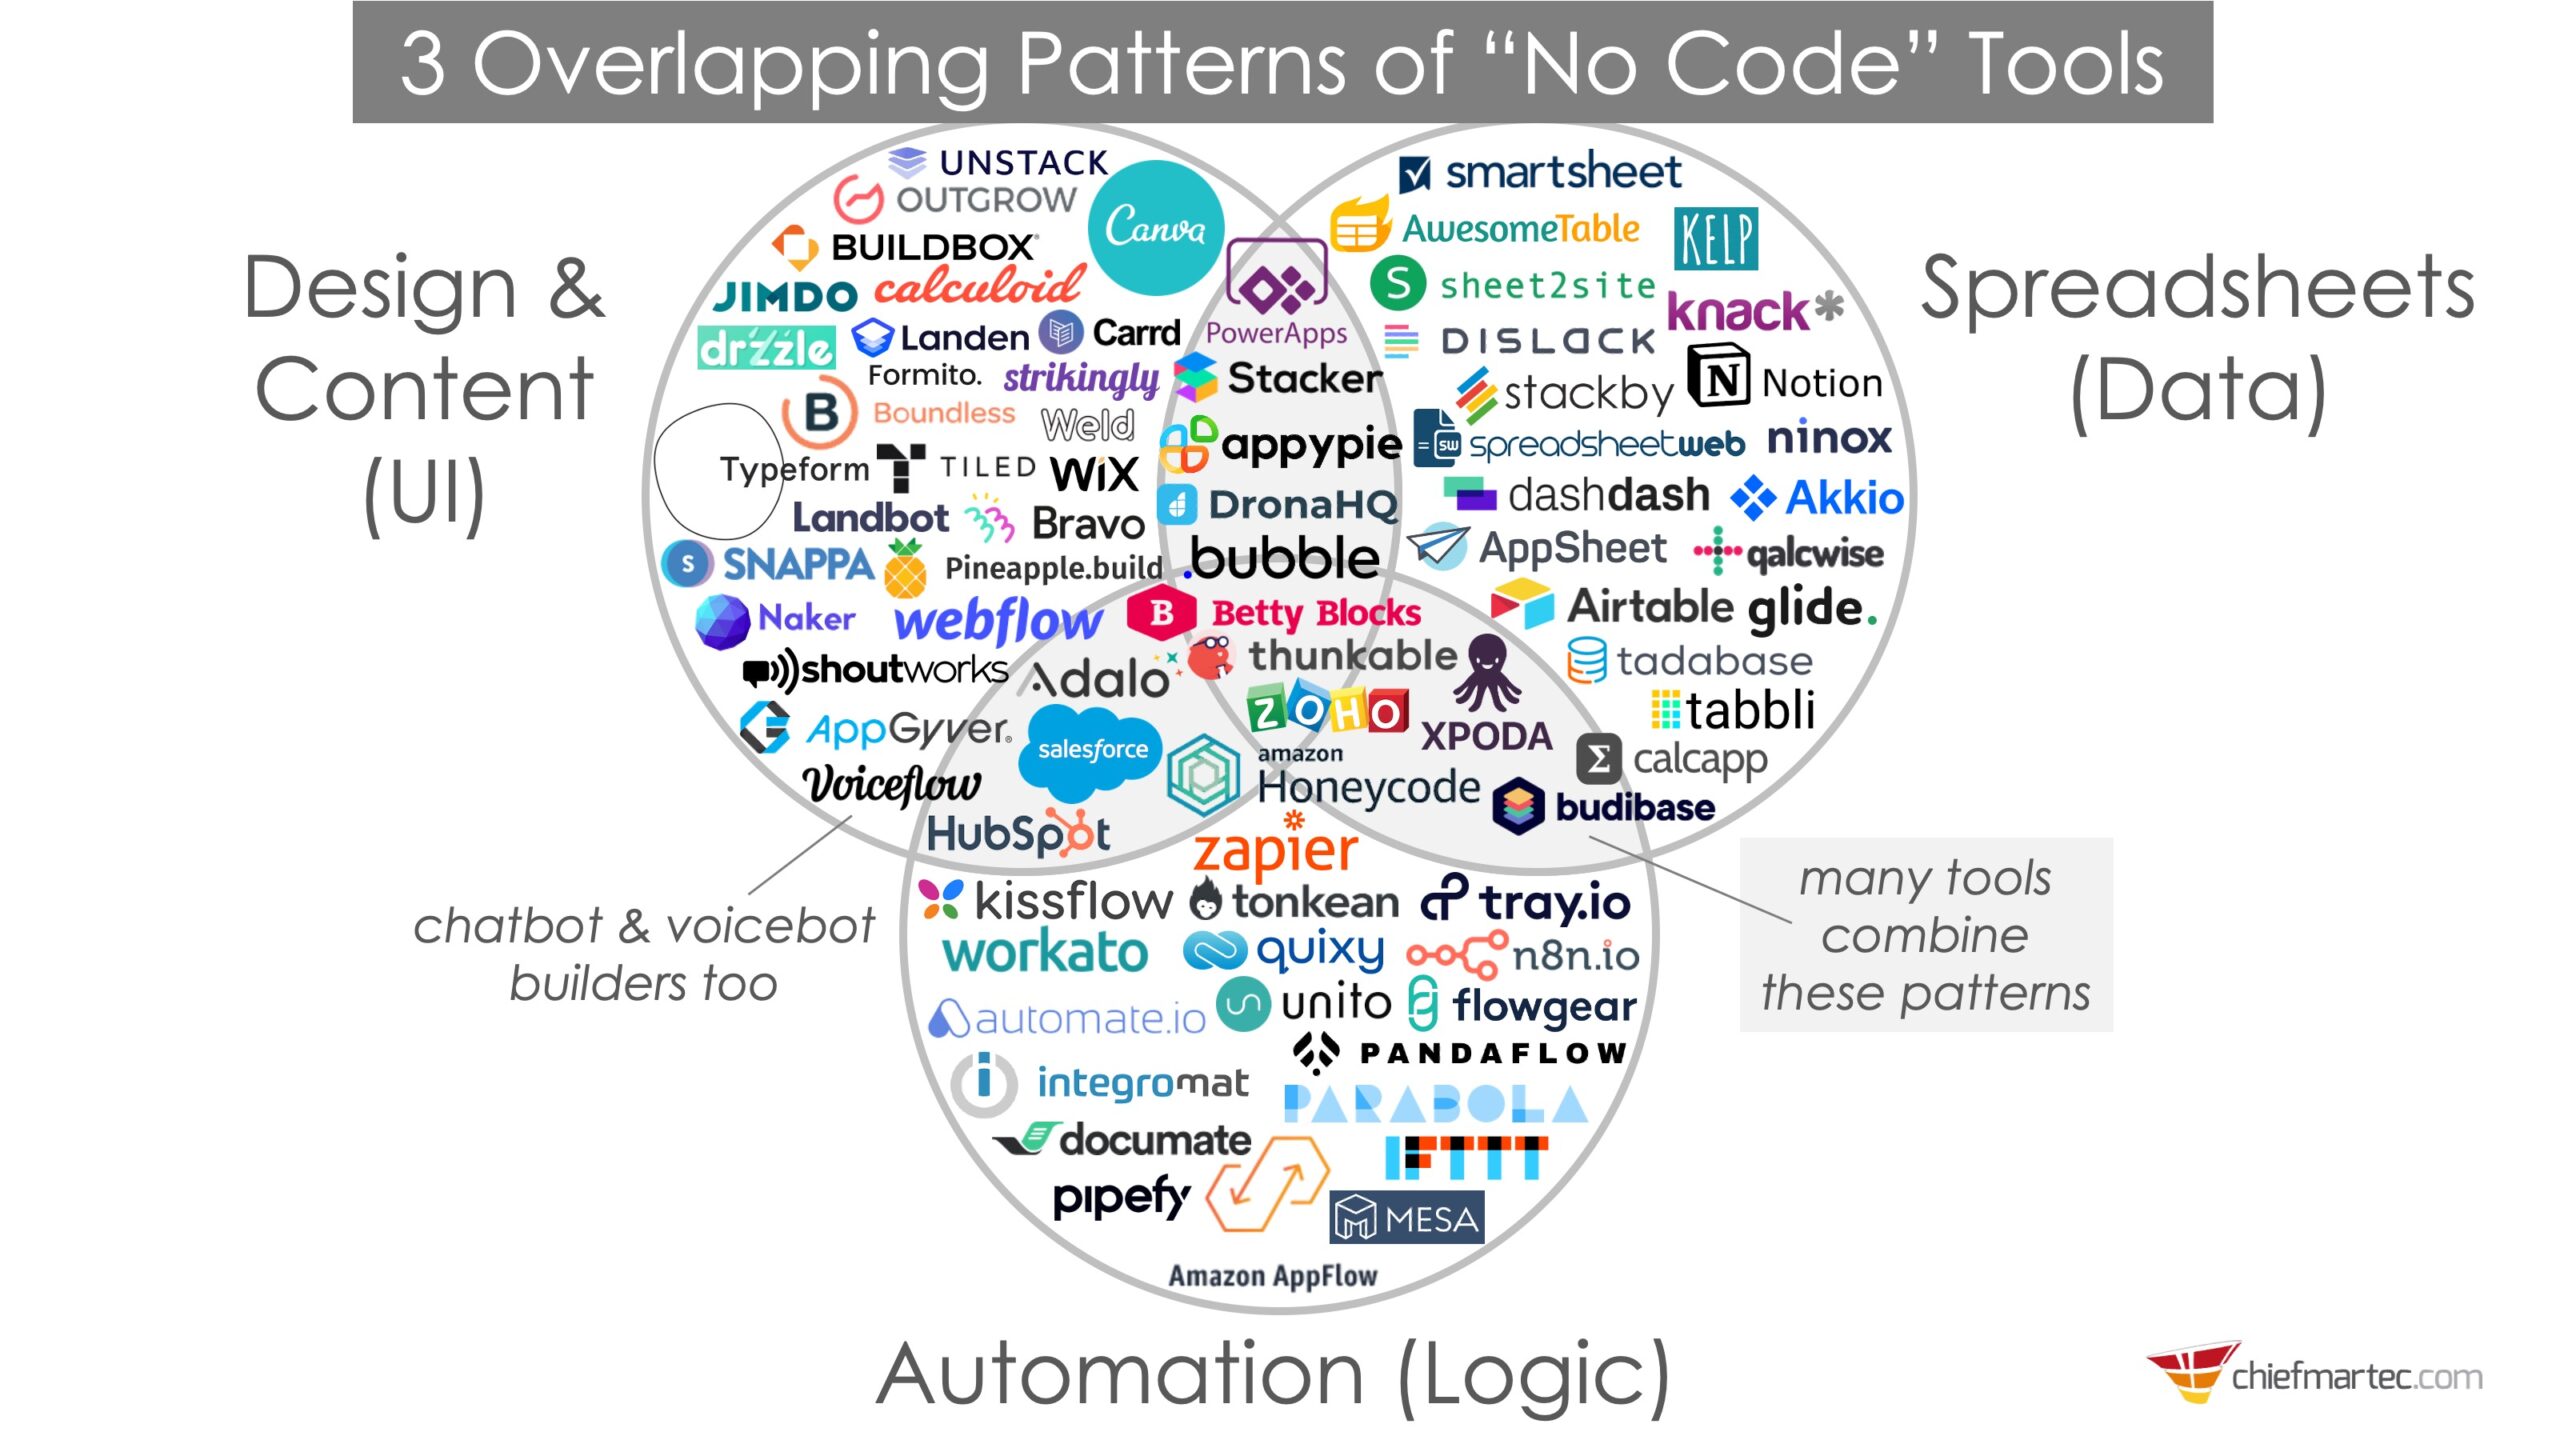 3 Überlappende Kreise von No-Code Tools: Design & Content, Spreadsheets und Automation